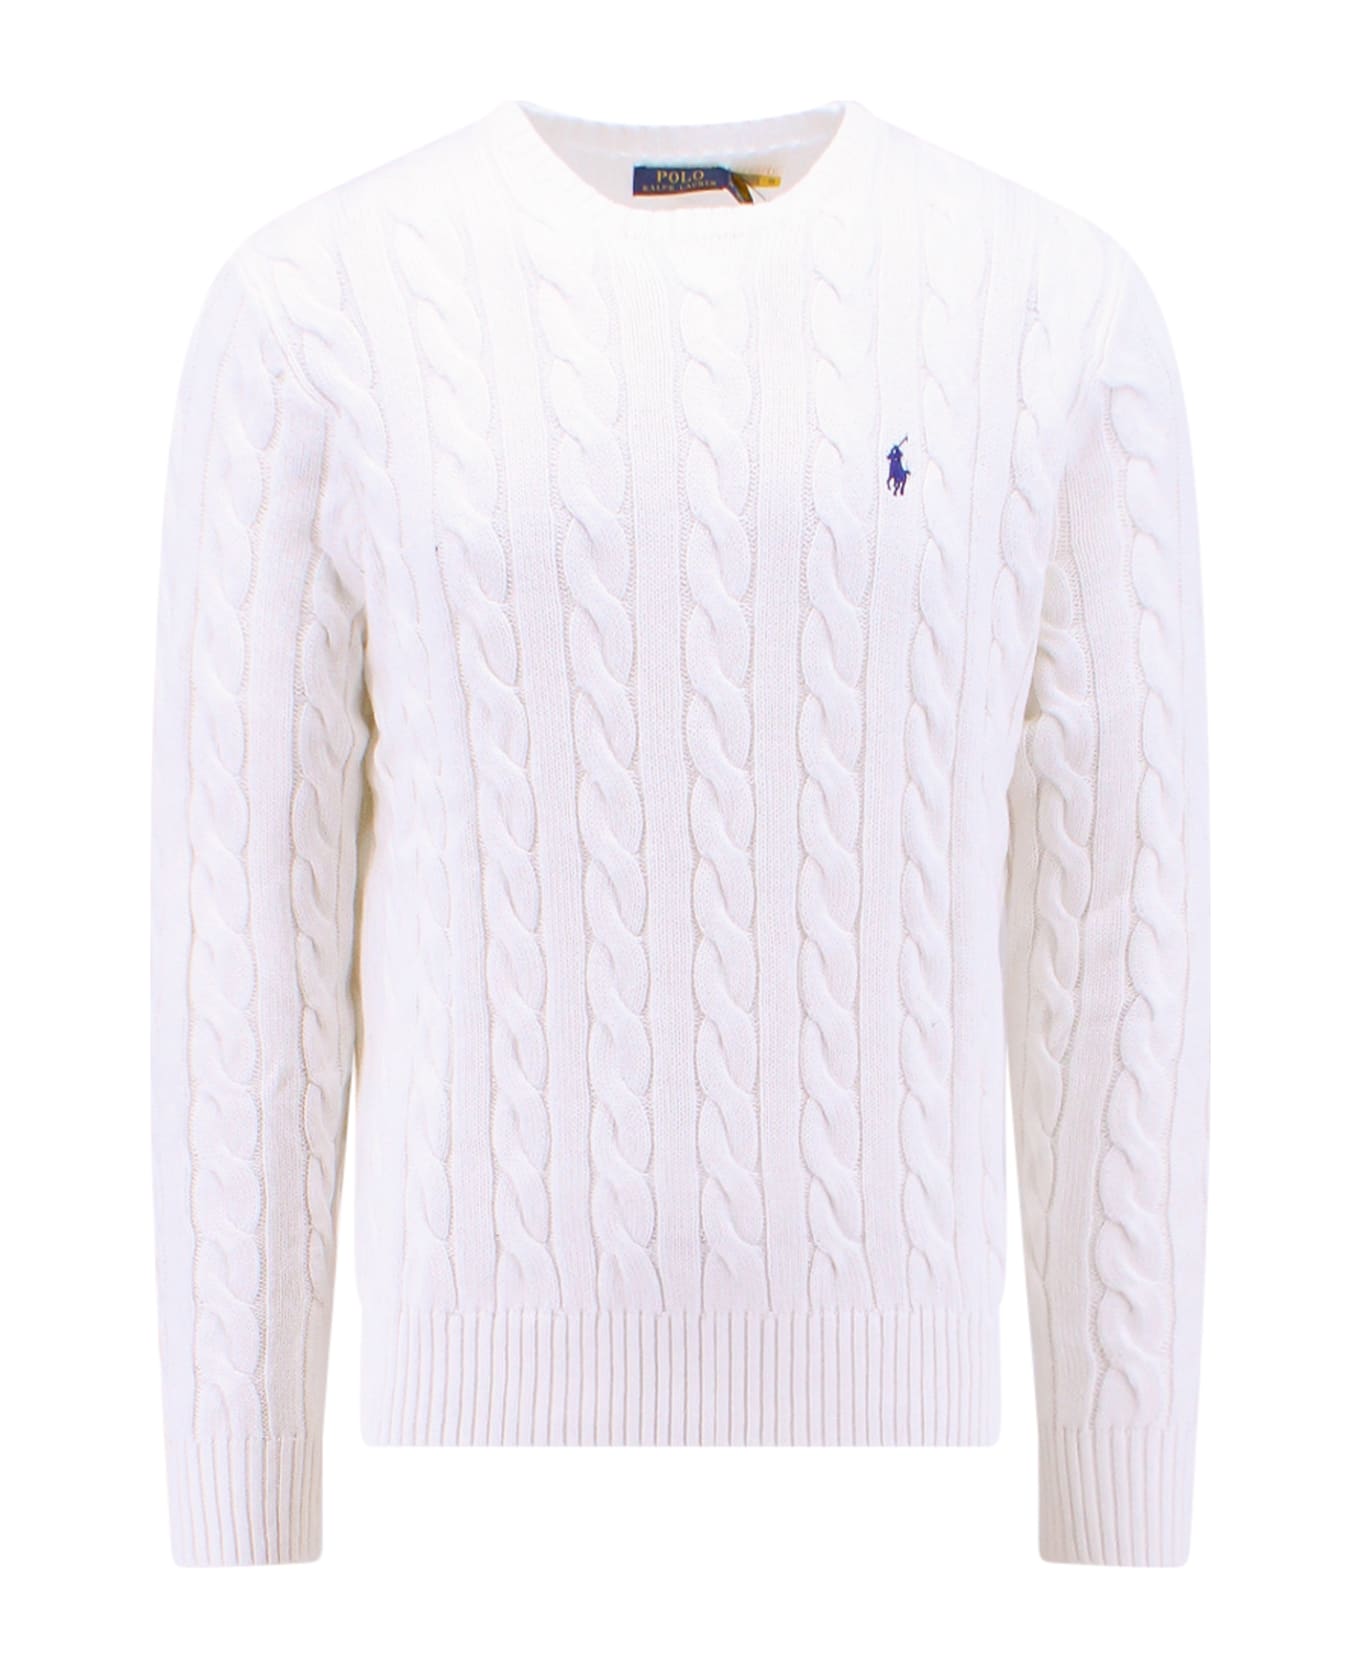 Ralph Lauren Sweater - white ニットウェア